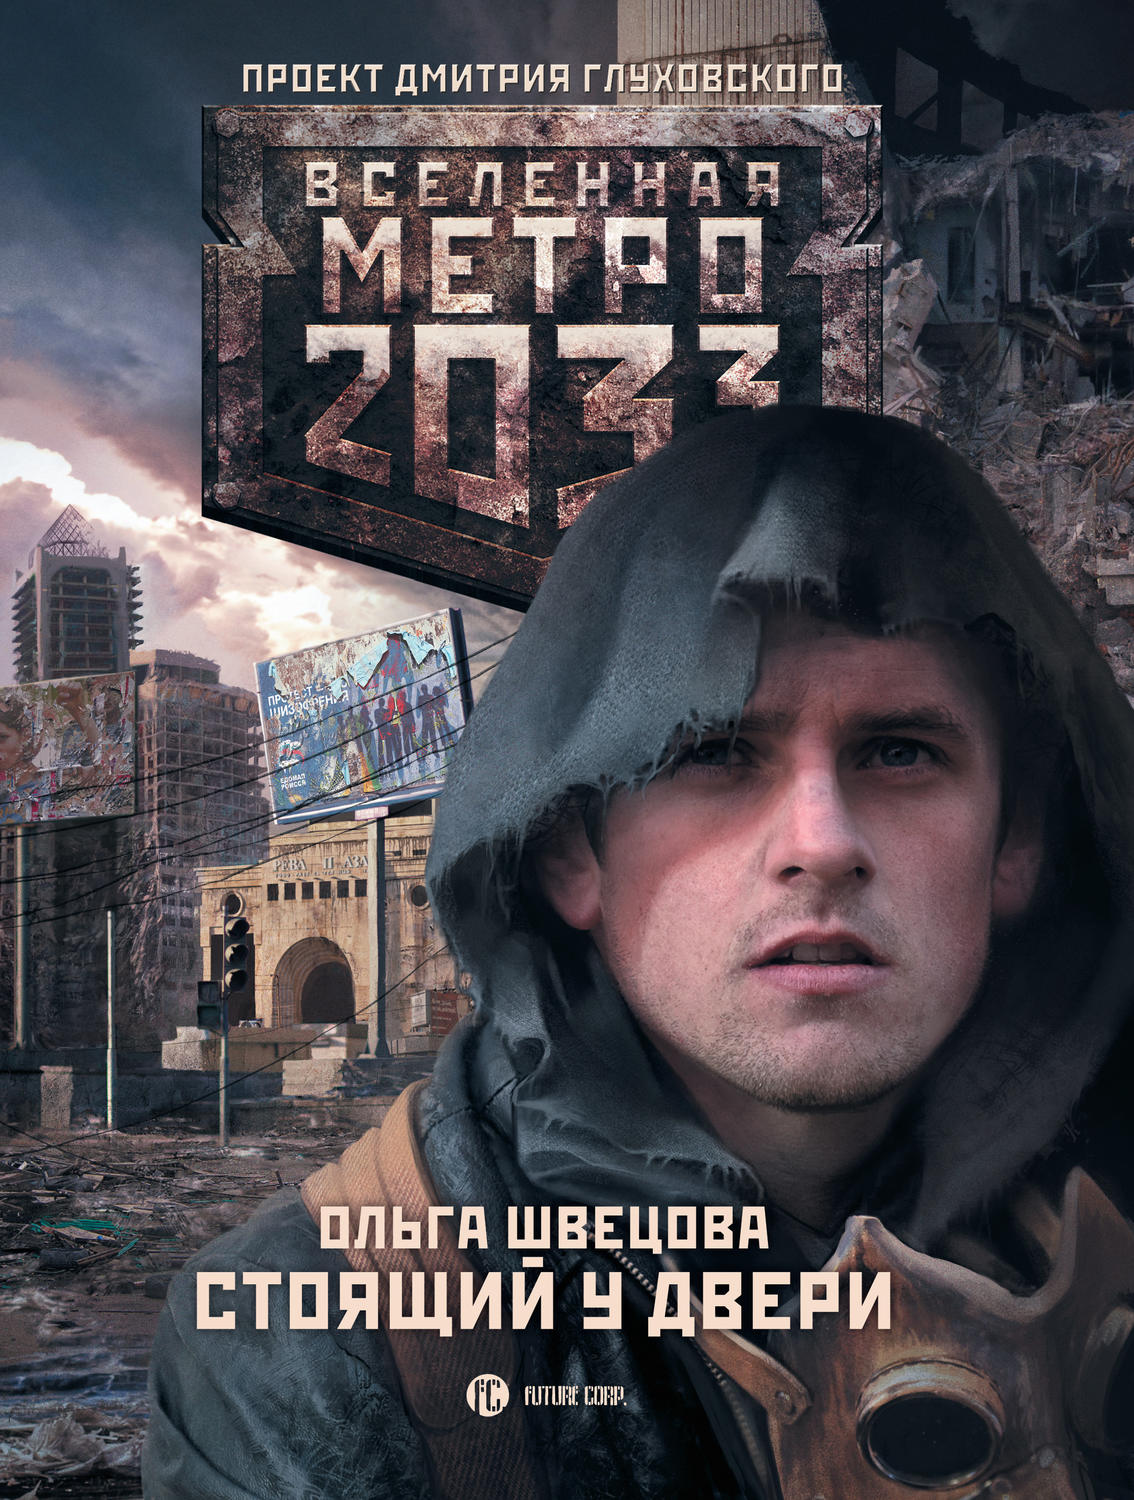 Книга метро 2033 стоящий у двери скачать